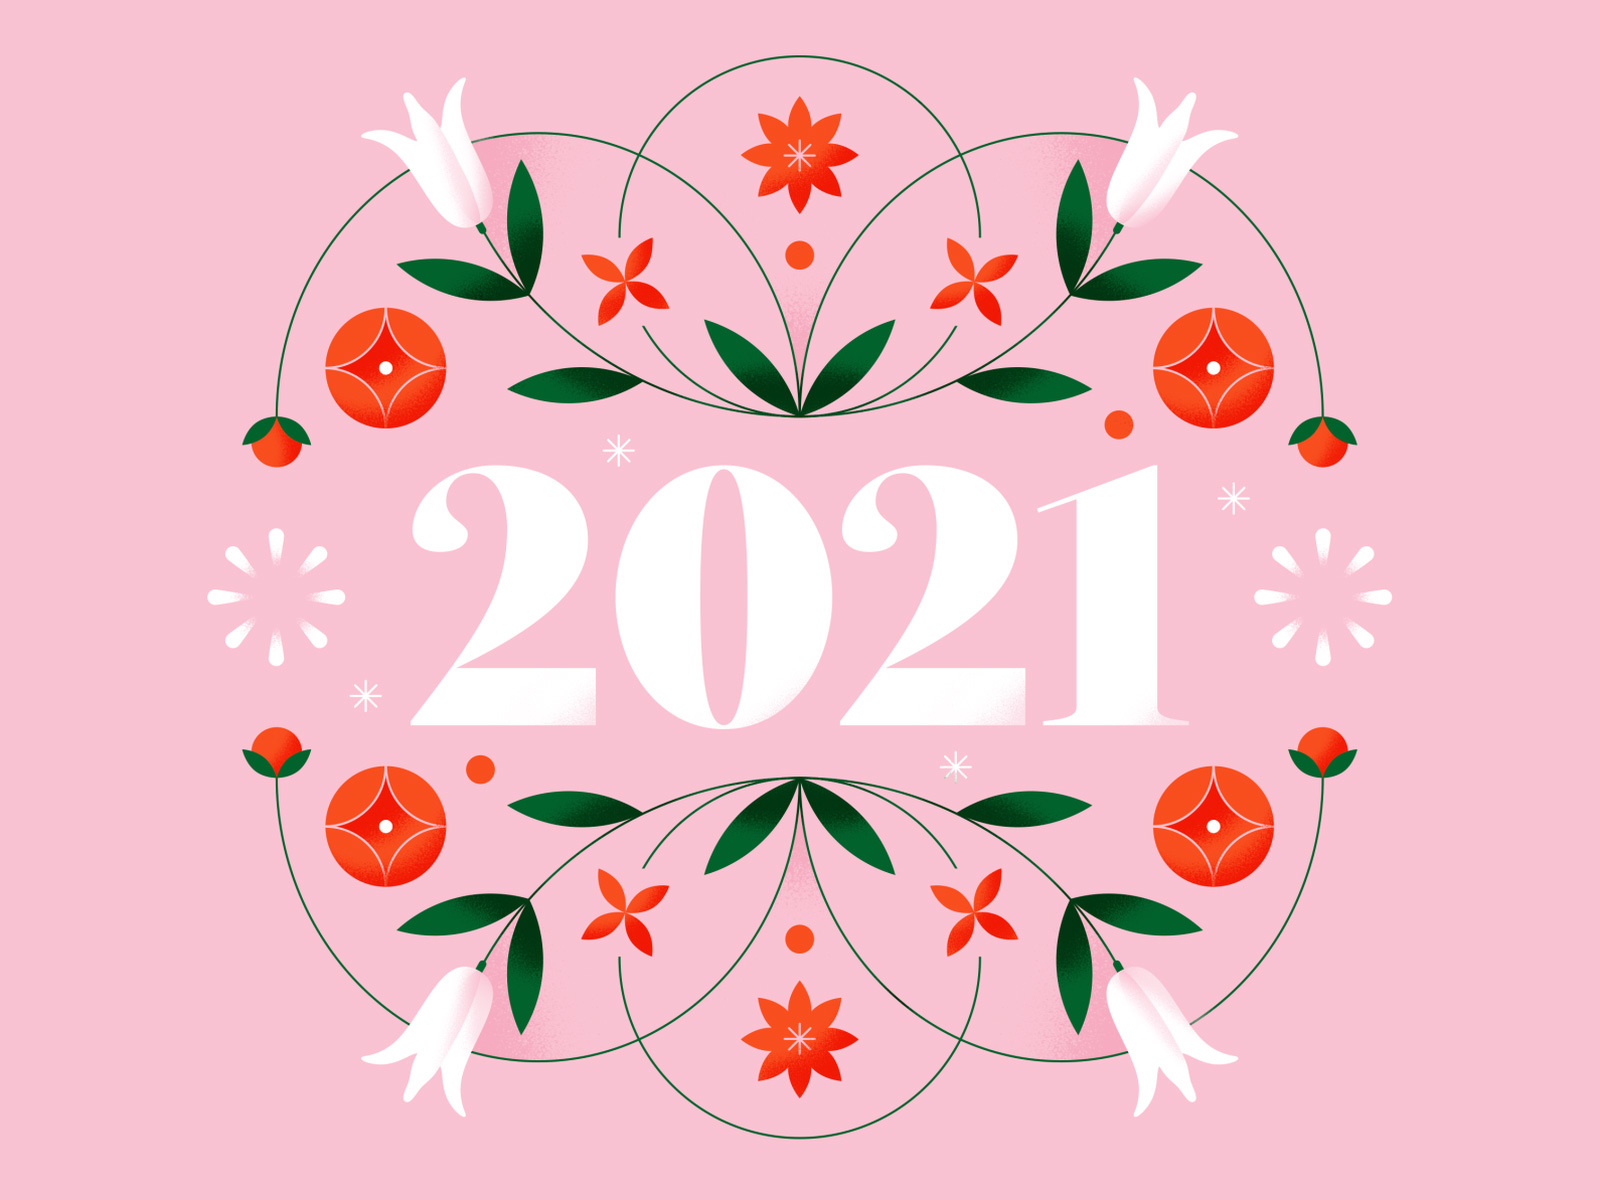 Happy 2021